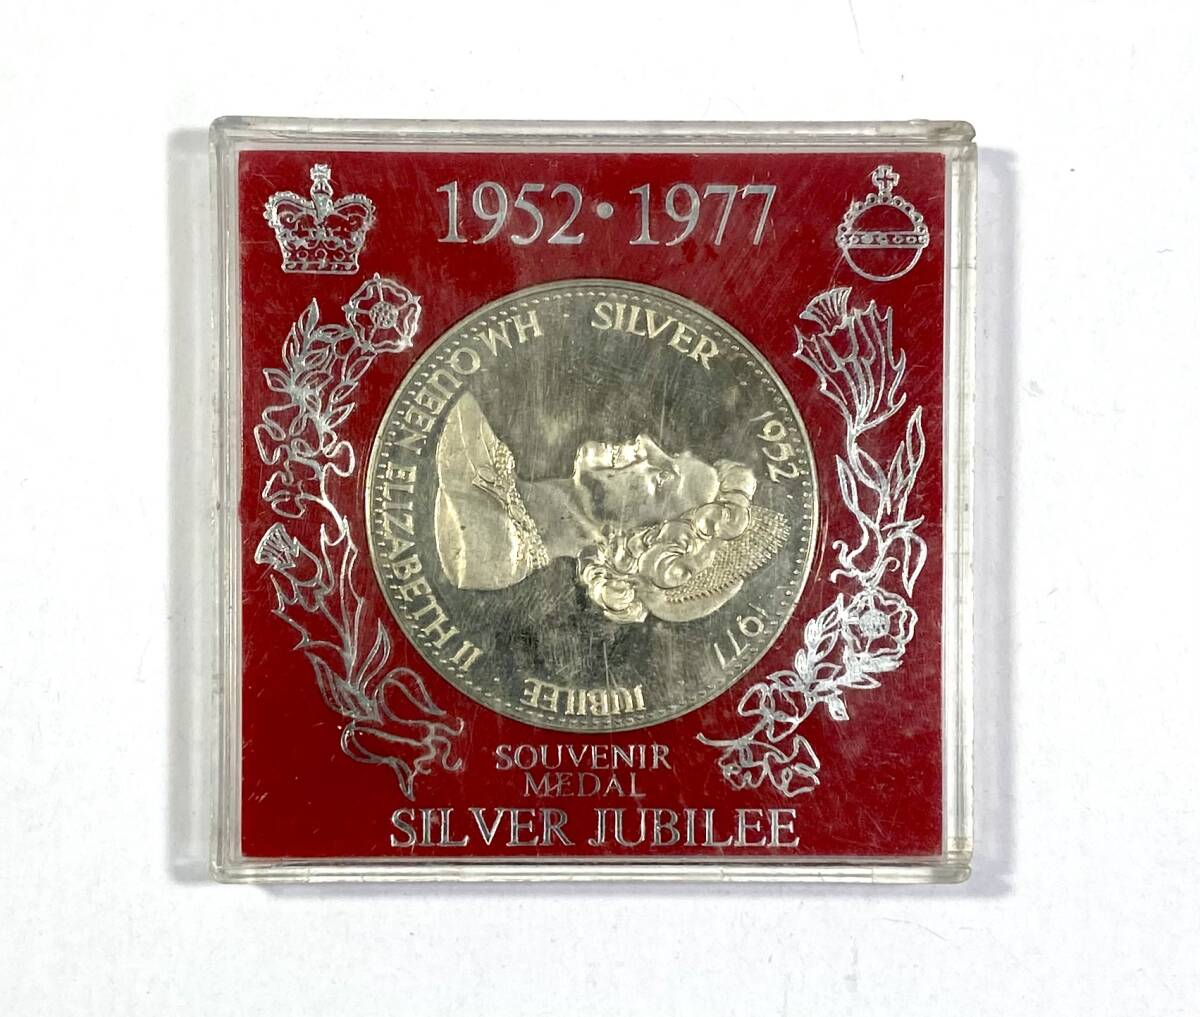 エリザベス女王2世 SOUVENIR MEDAL SILVER JUBILEE 記念銀貨 シルバージュビリー1952 1977 イギリス 記念コイン コレクター放出品の画像1